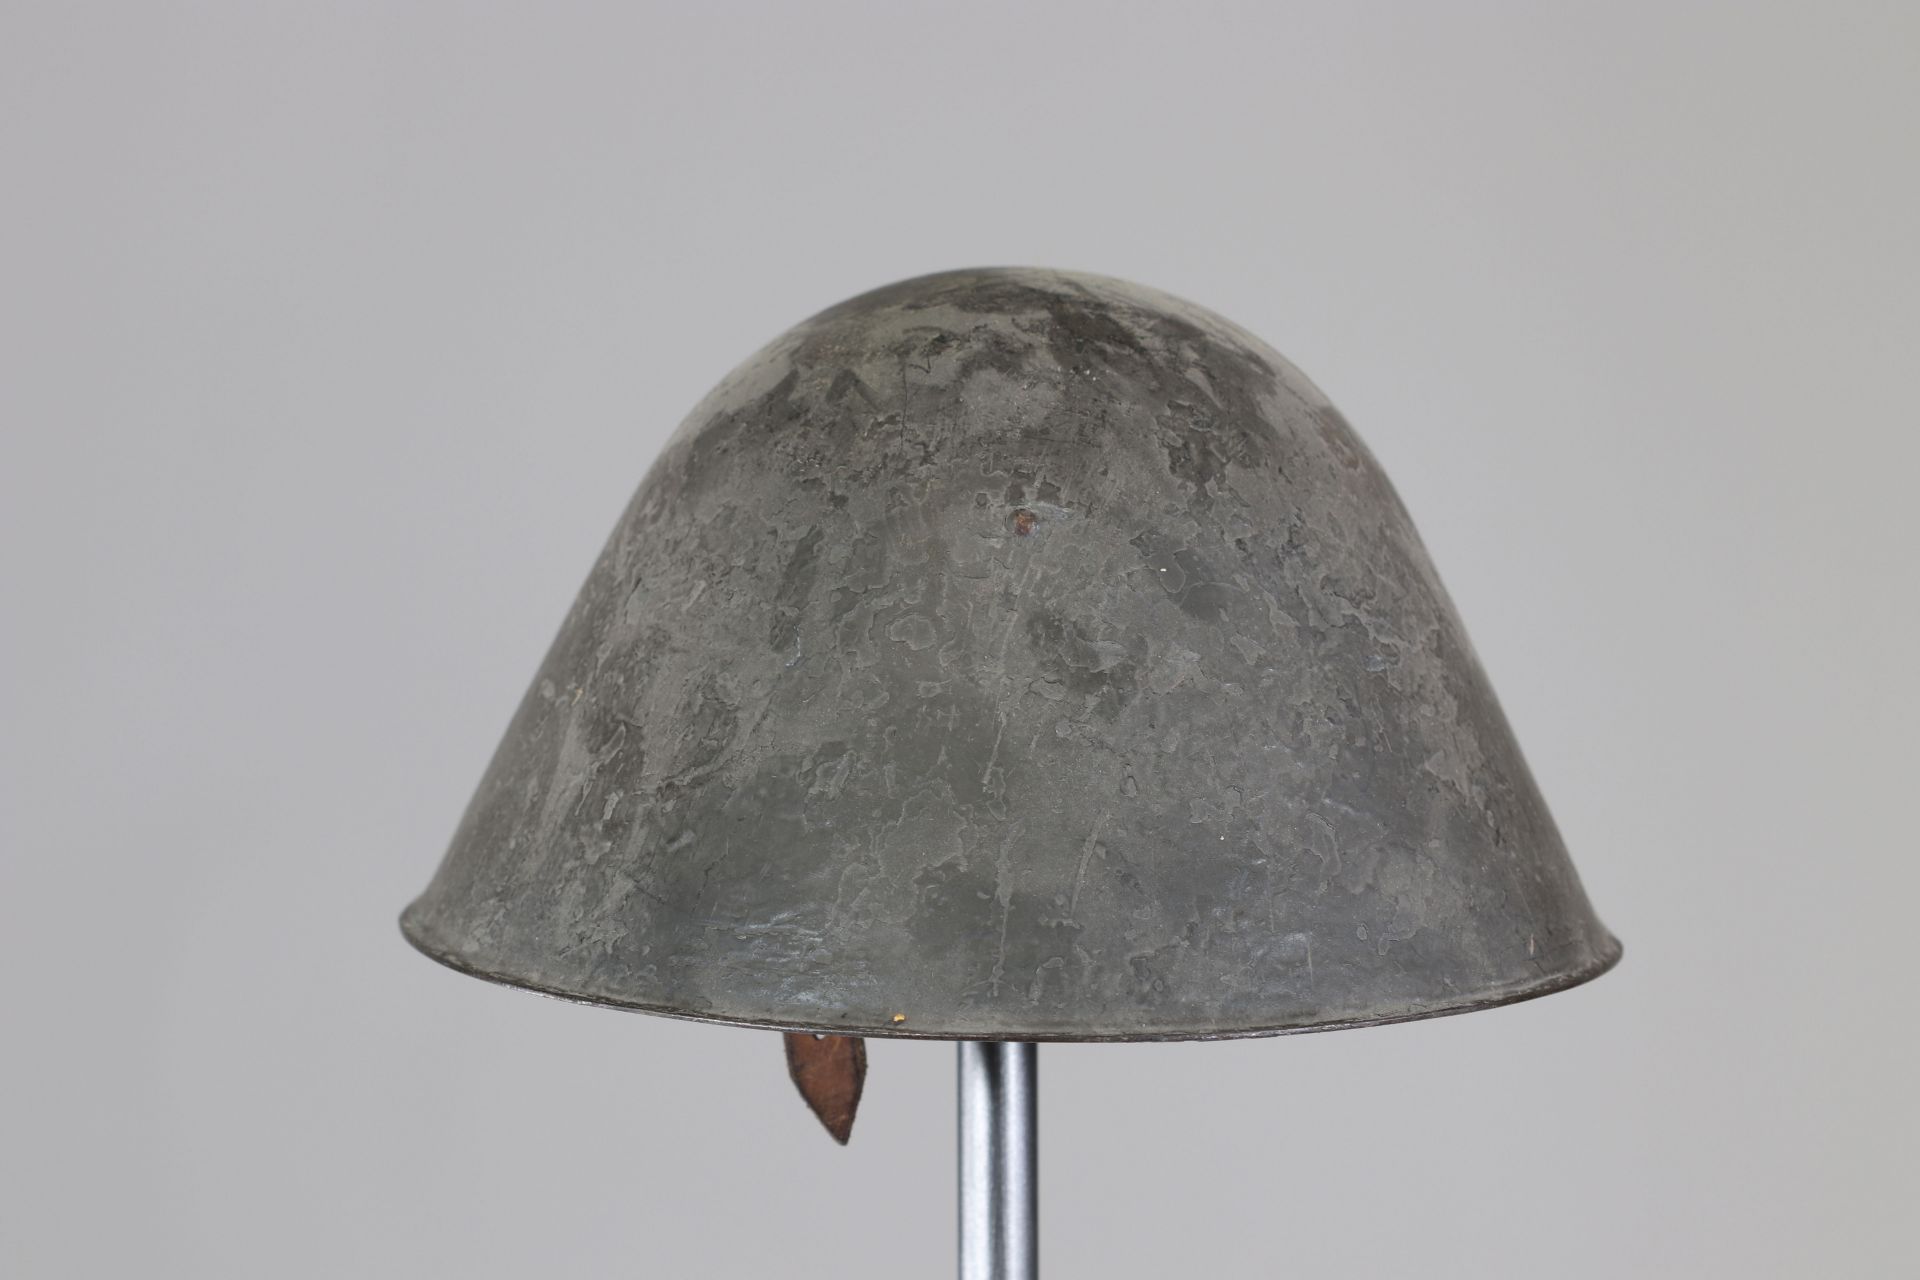 Eastern country helmet - Image 4 of 5